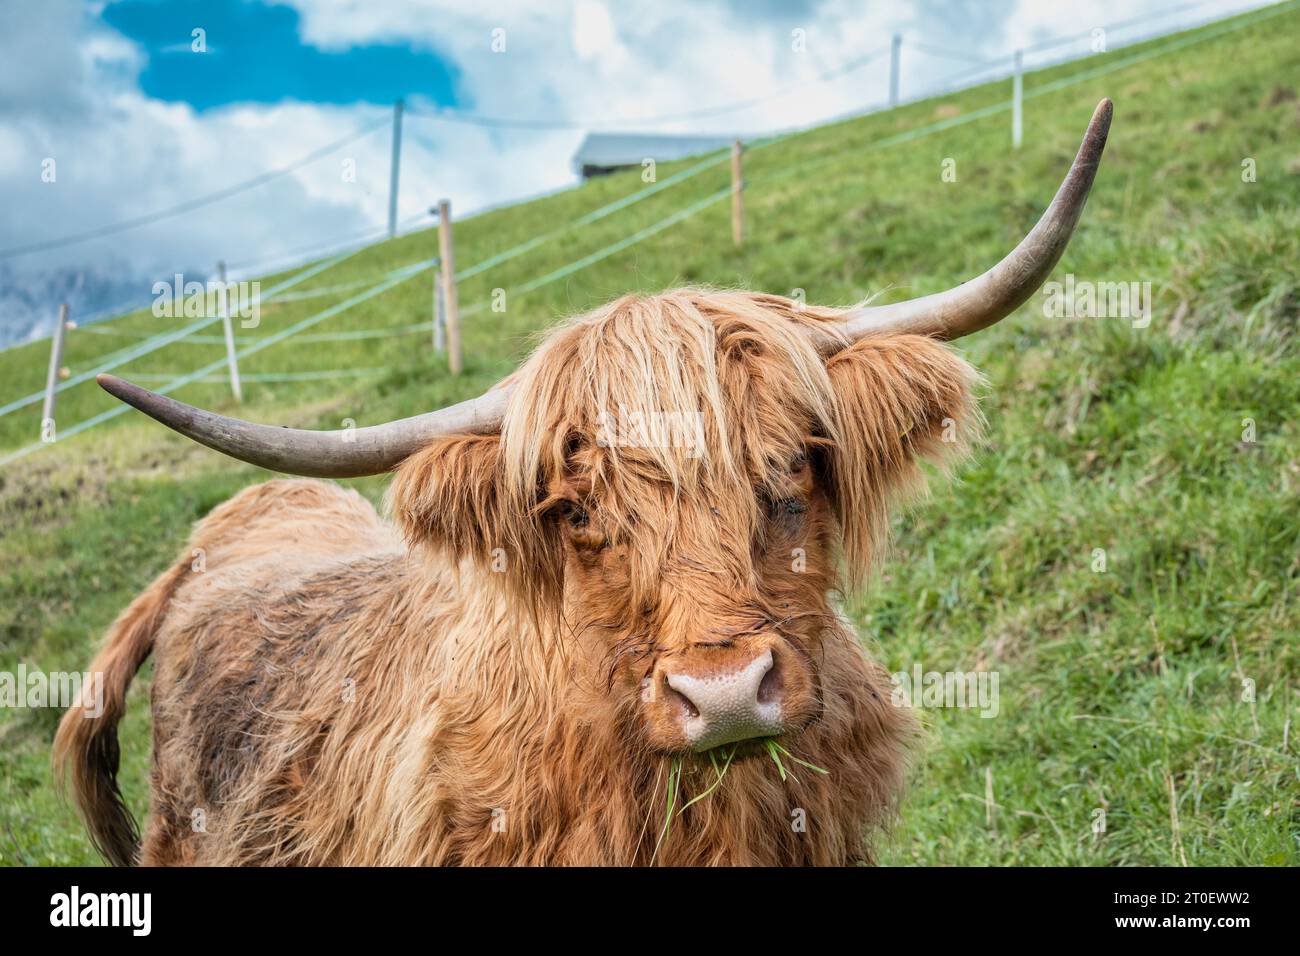 Italie, Vénétie, province de Belluno, San Nicolò di Comelico, pâturage de vaches des hautes terres à poils longs bruns Banque D'Images